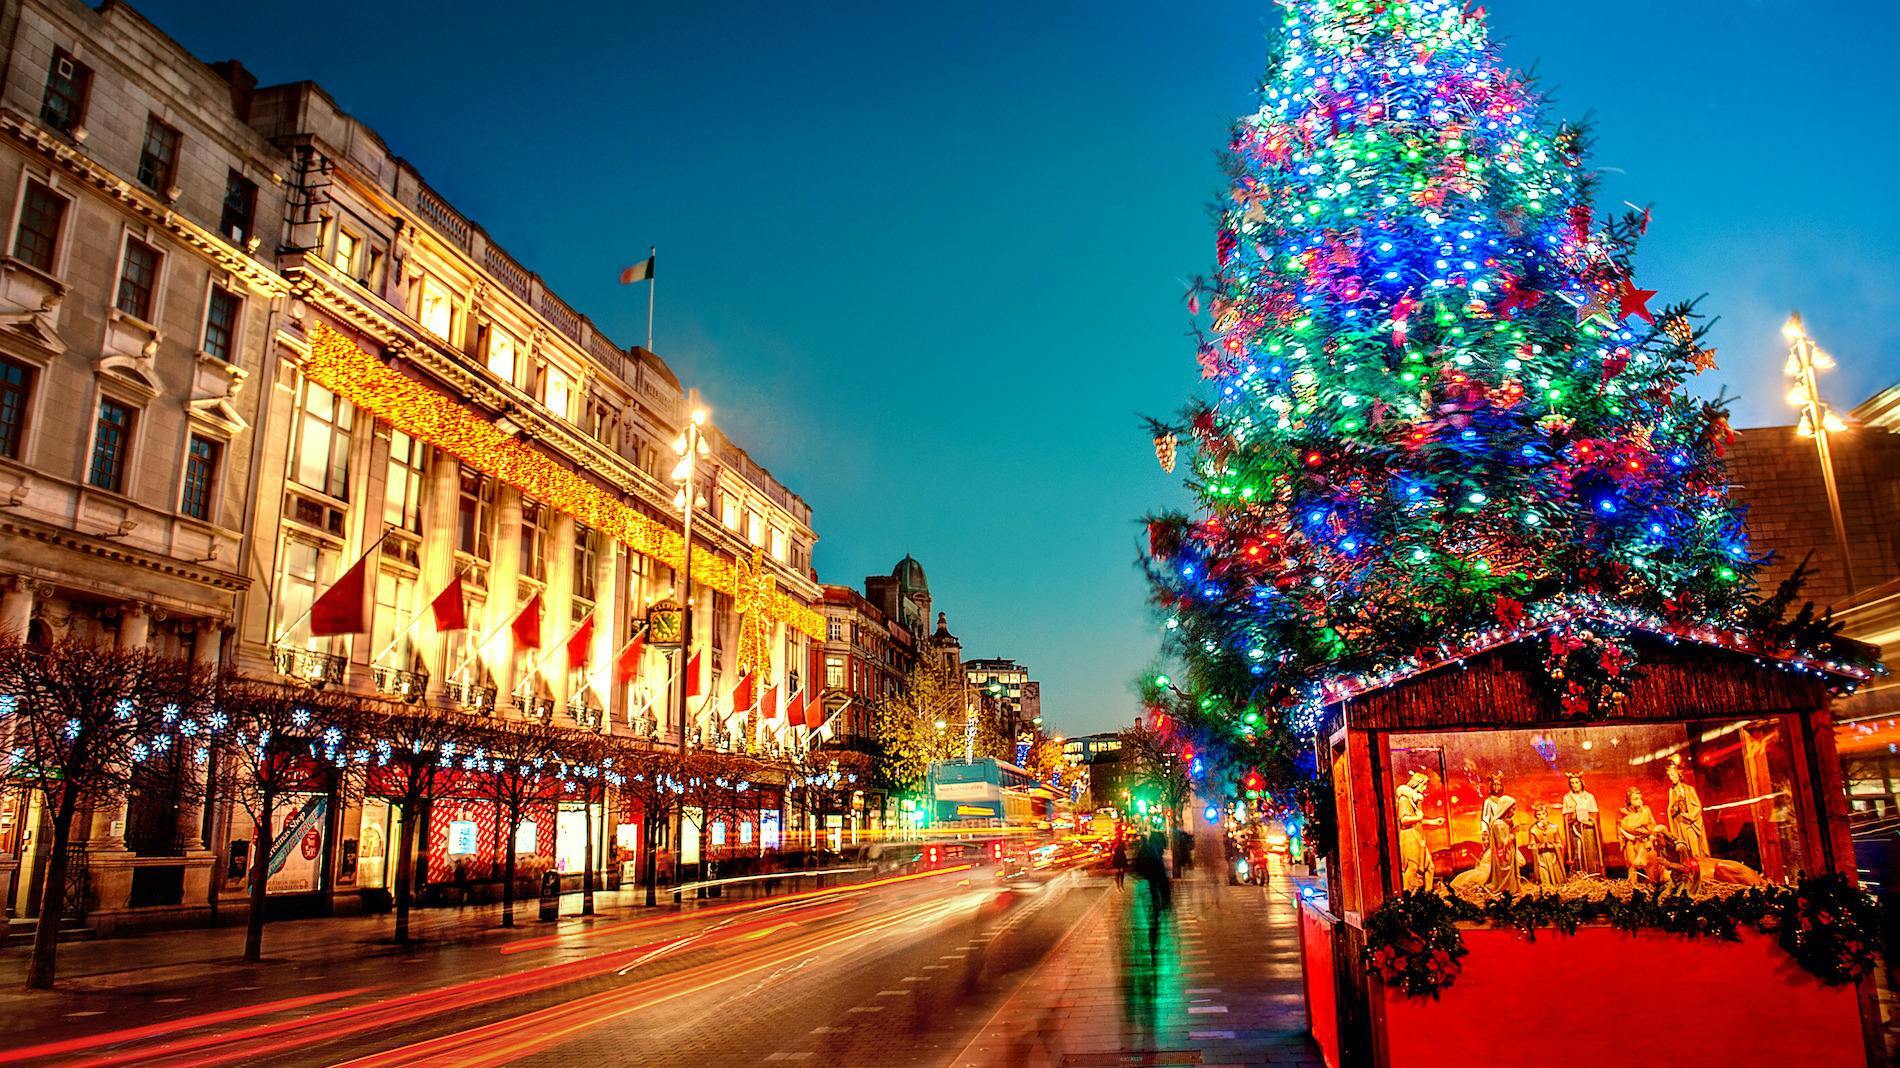 Dublins Christmas Tree